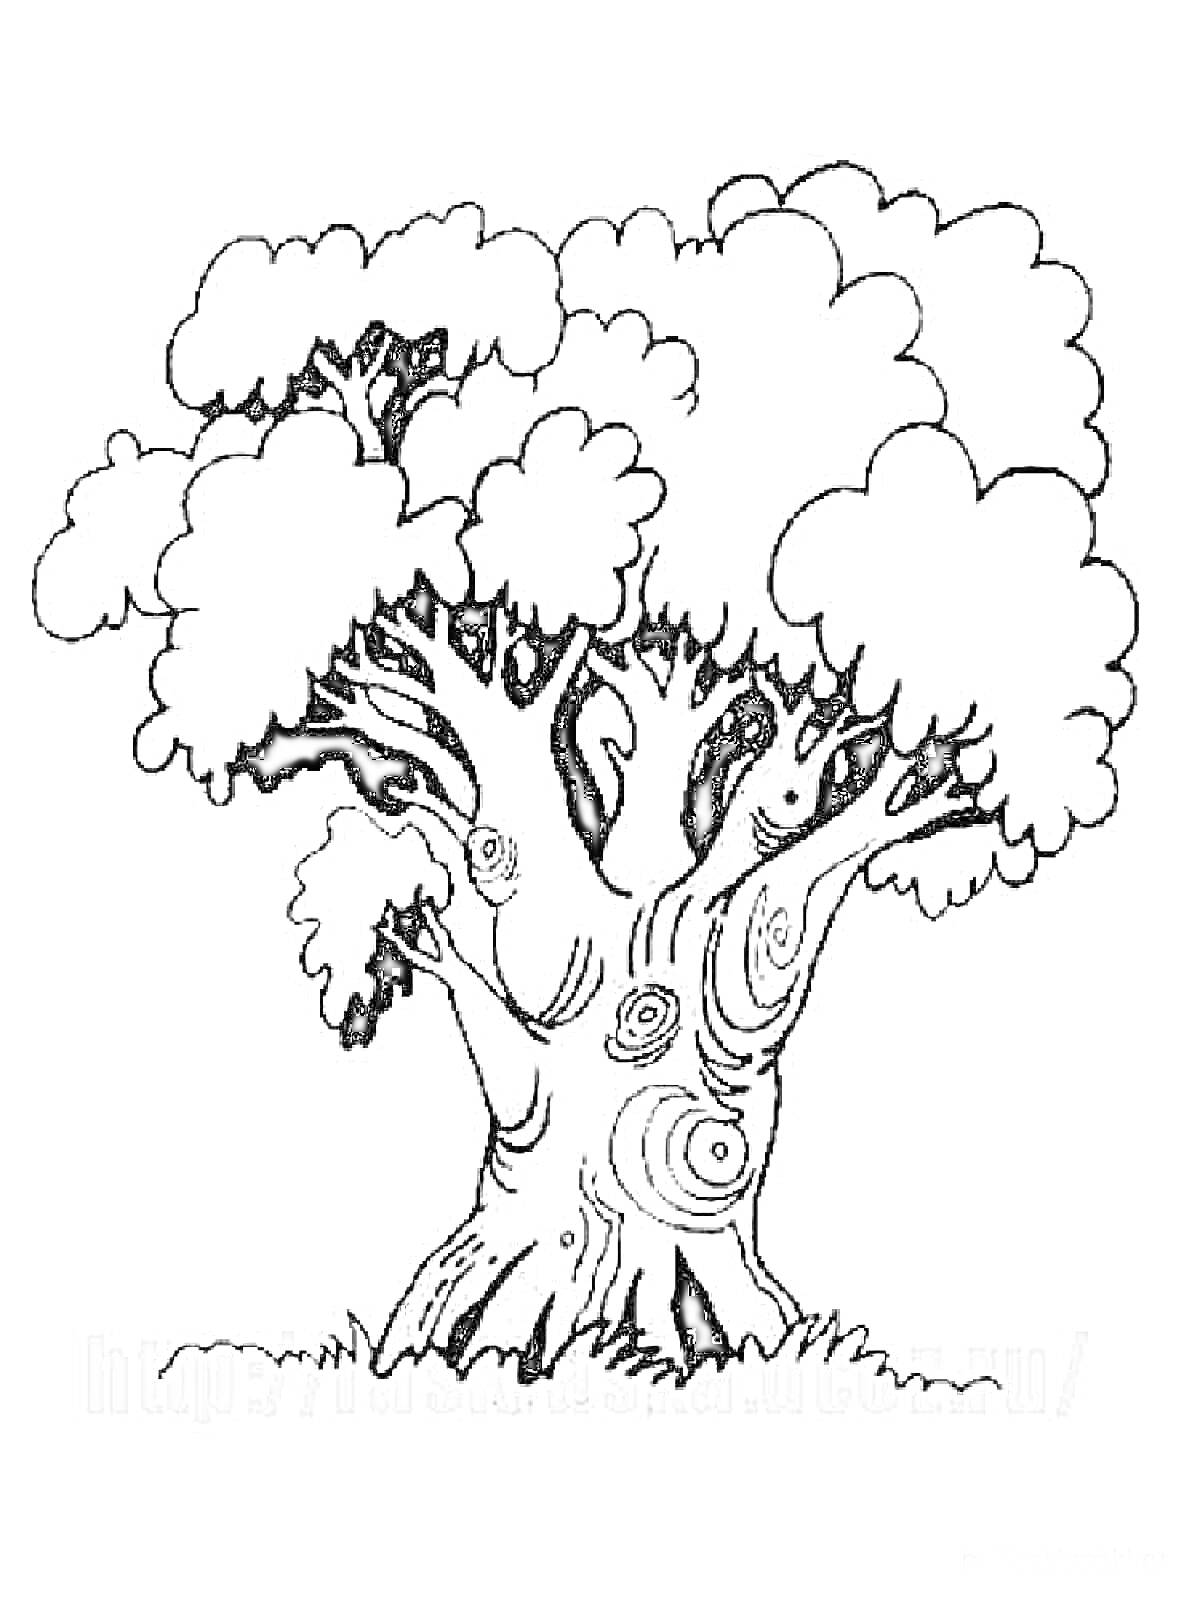 Рисунок дерева с пышной кроной и видимыми кольцами на стволе